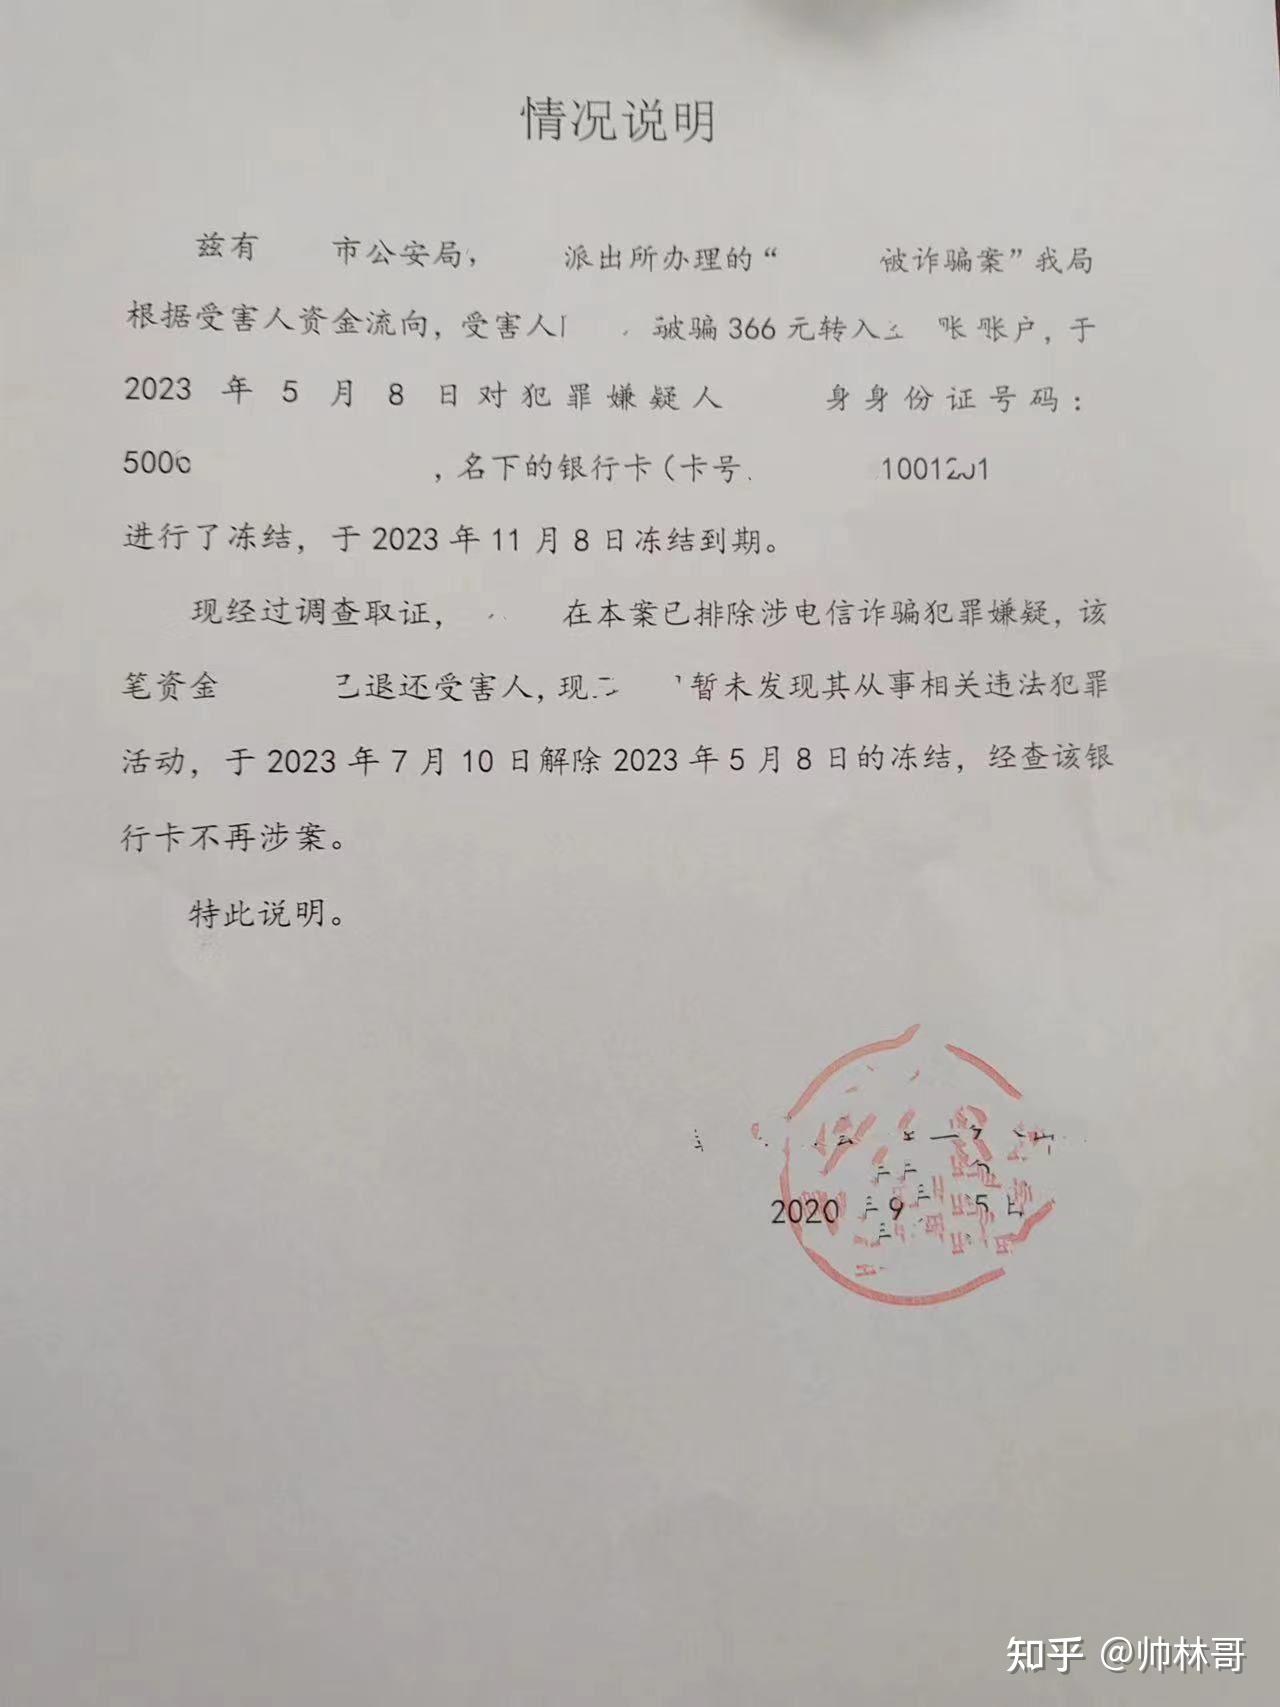 QQ永久冻结解封方法-腾讯云开发者社区-腾讯云